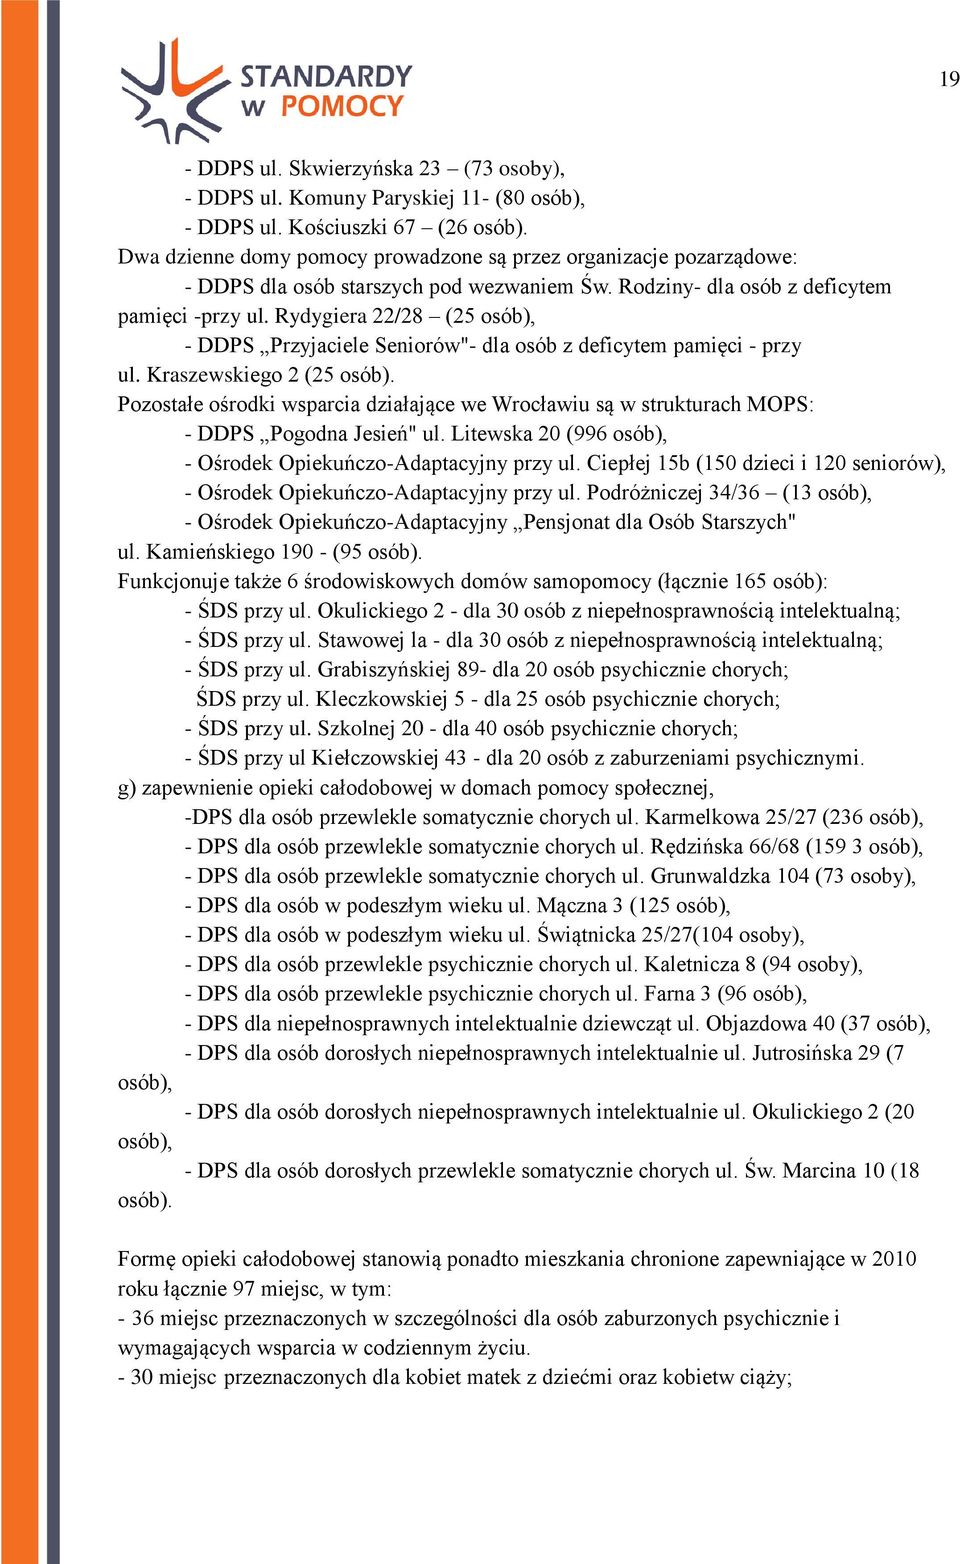 Rydygiera 22/28 (25 osób), - DDPS Przyjaciele Seniorów"- dla osób z deficytem pamięci - przy ul. Kraszewskiego 2 (25 osób).